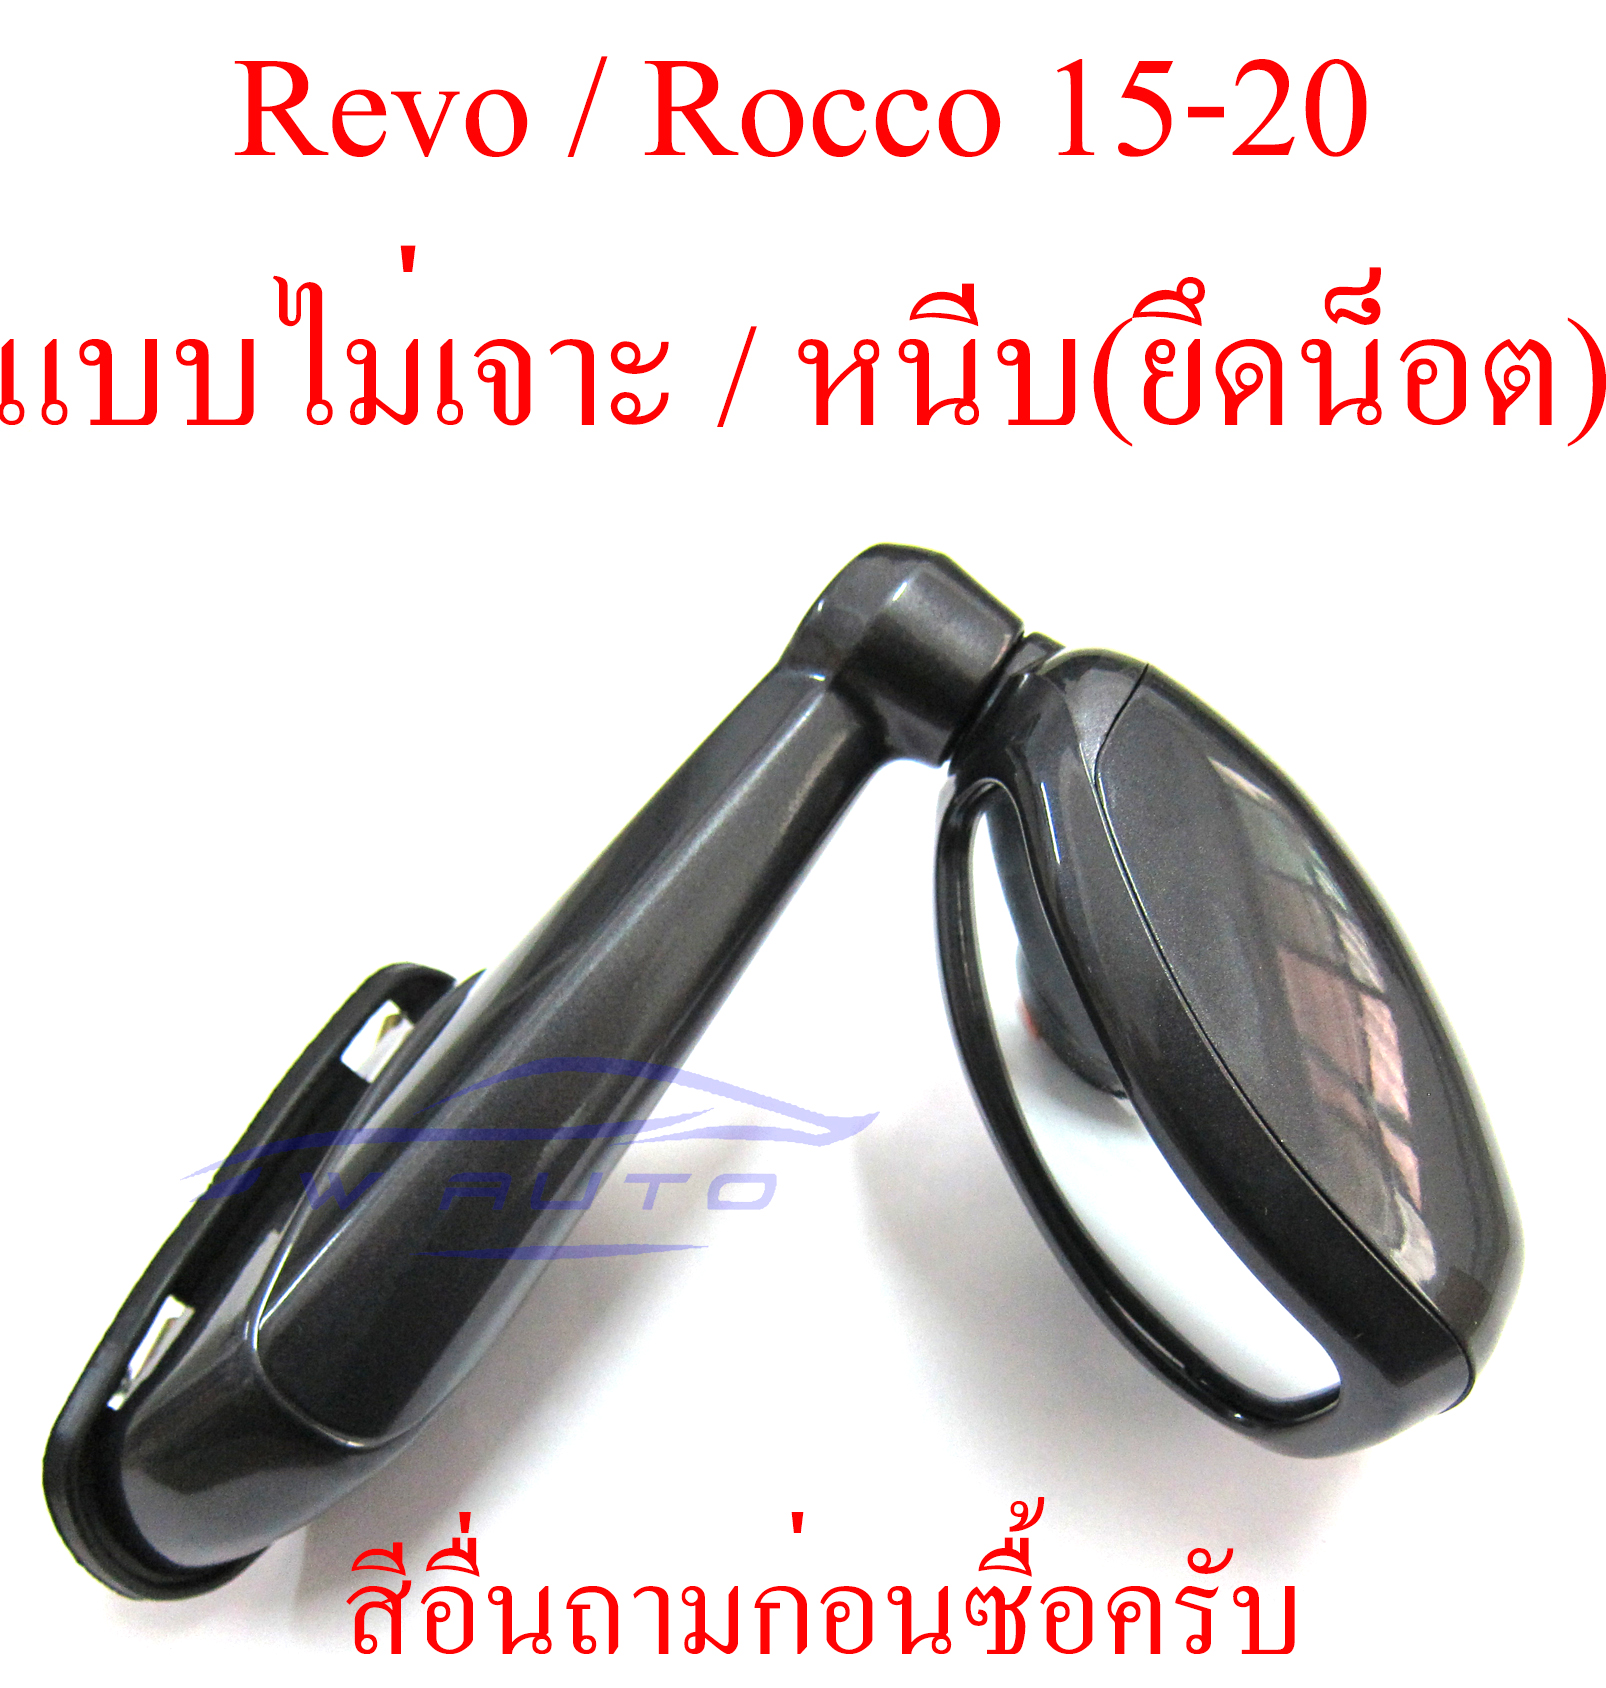 กระจกมองมุม โตโยต้า รีโว่ ร็อคโค่ 2015-2020 TOYOTA REVO Rocco 15-20 (สีตามตัวรถ ขาวมุก 070 + 100 บาทนะครับ) กระจก มองมุม รุ่นไม่เจาะ หนีบ ใช้น็อต